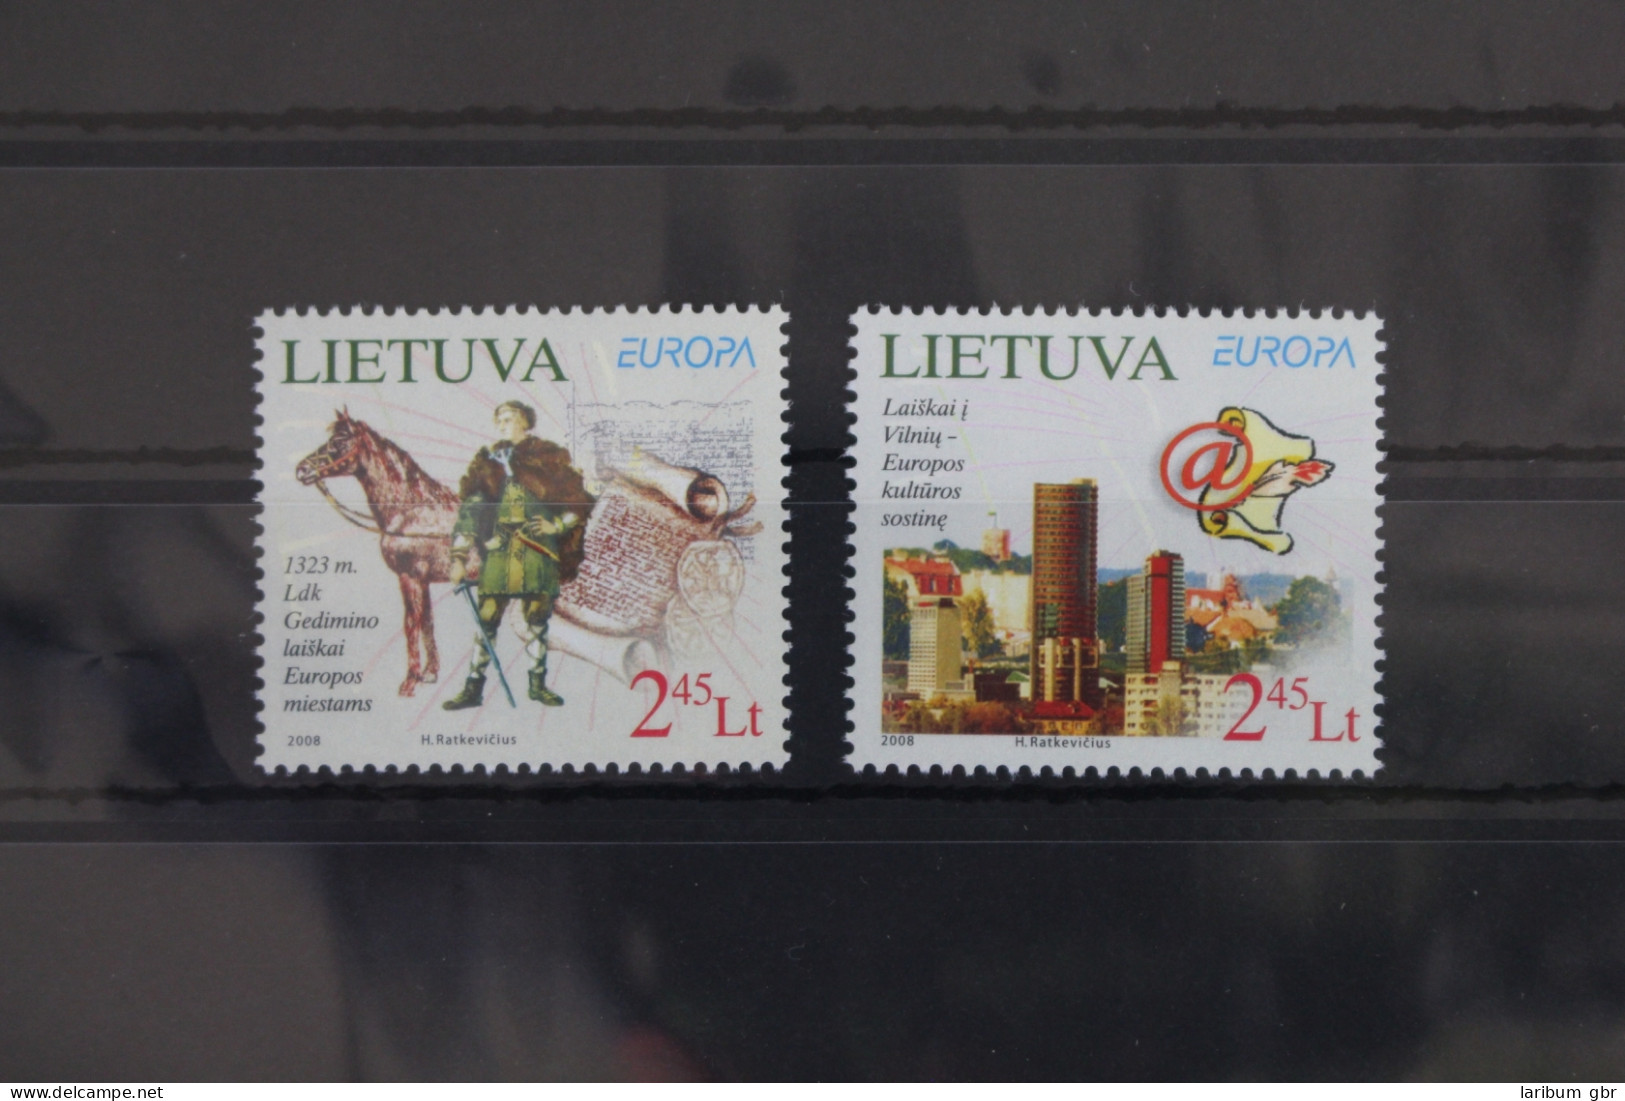 Litauen 970-971 Postfrisch Europa Der Brief #VT333 - Lituanie